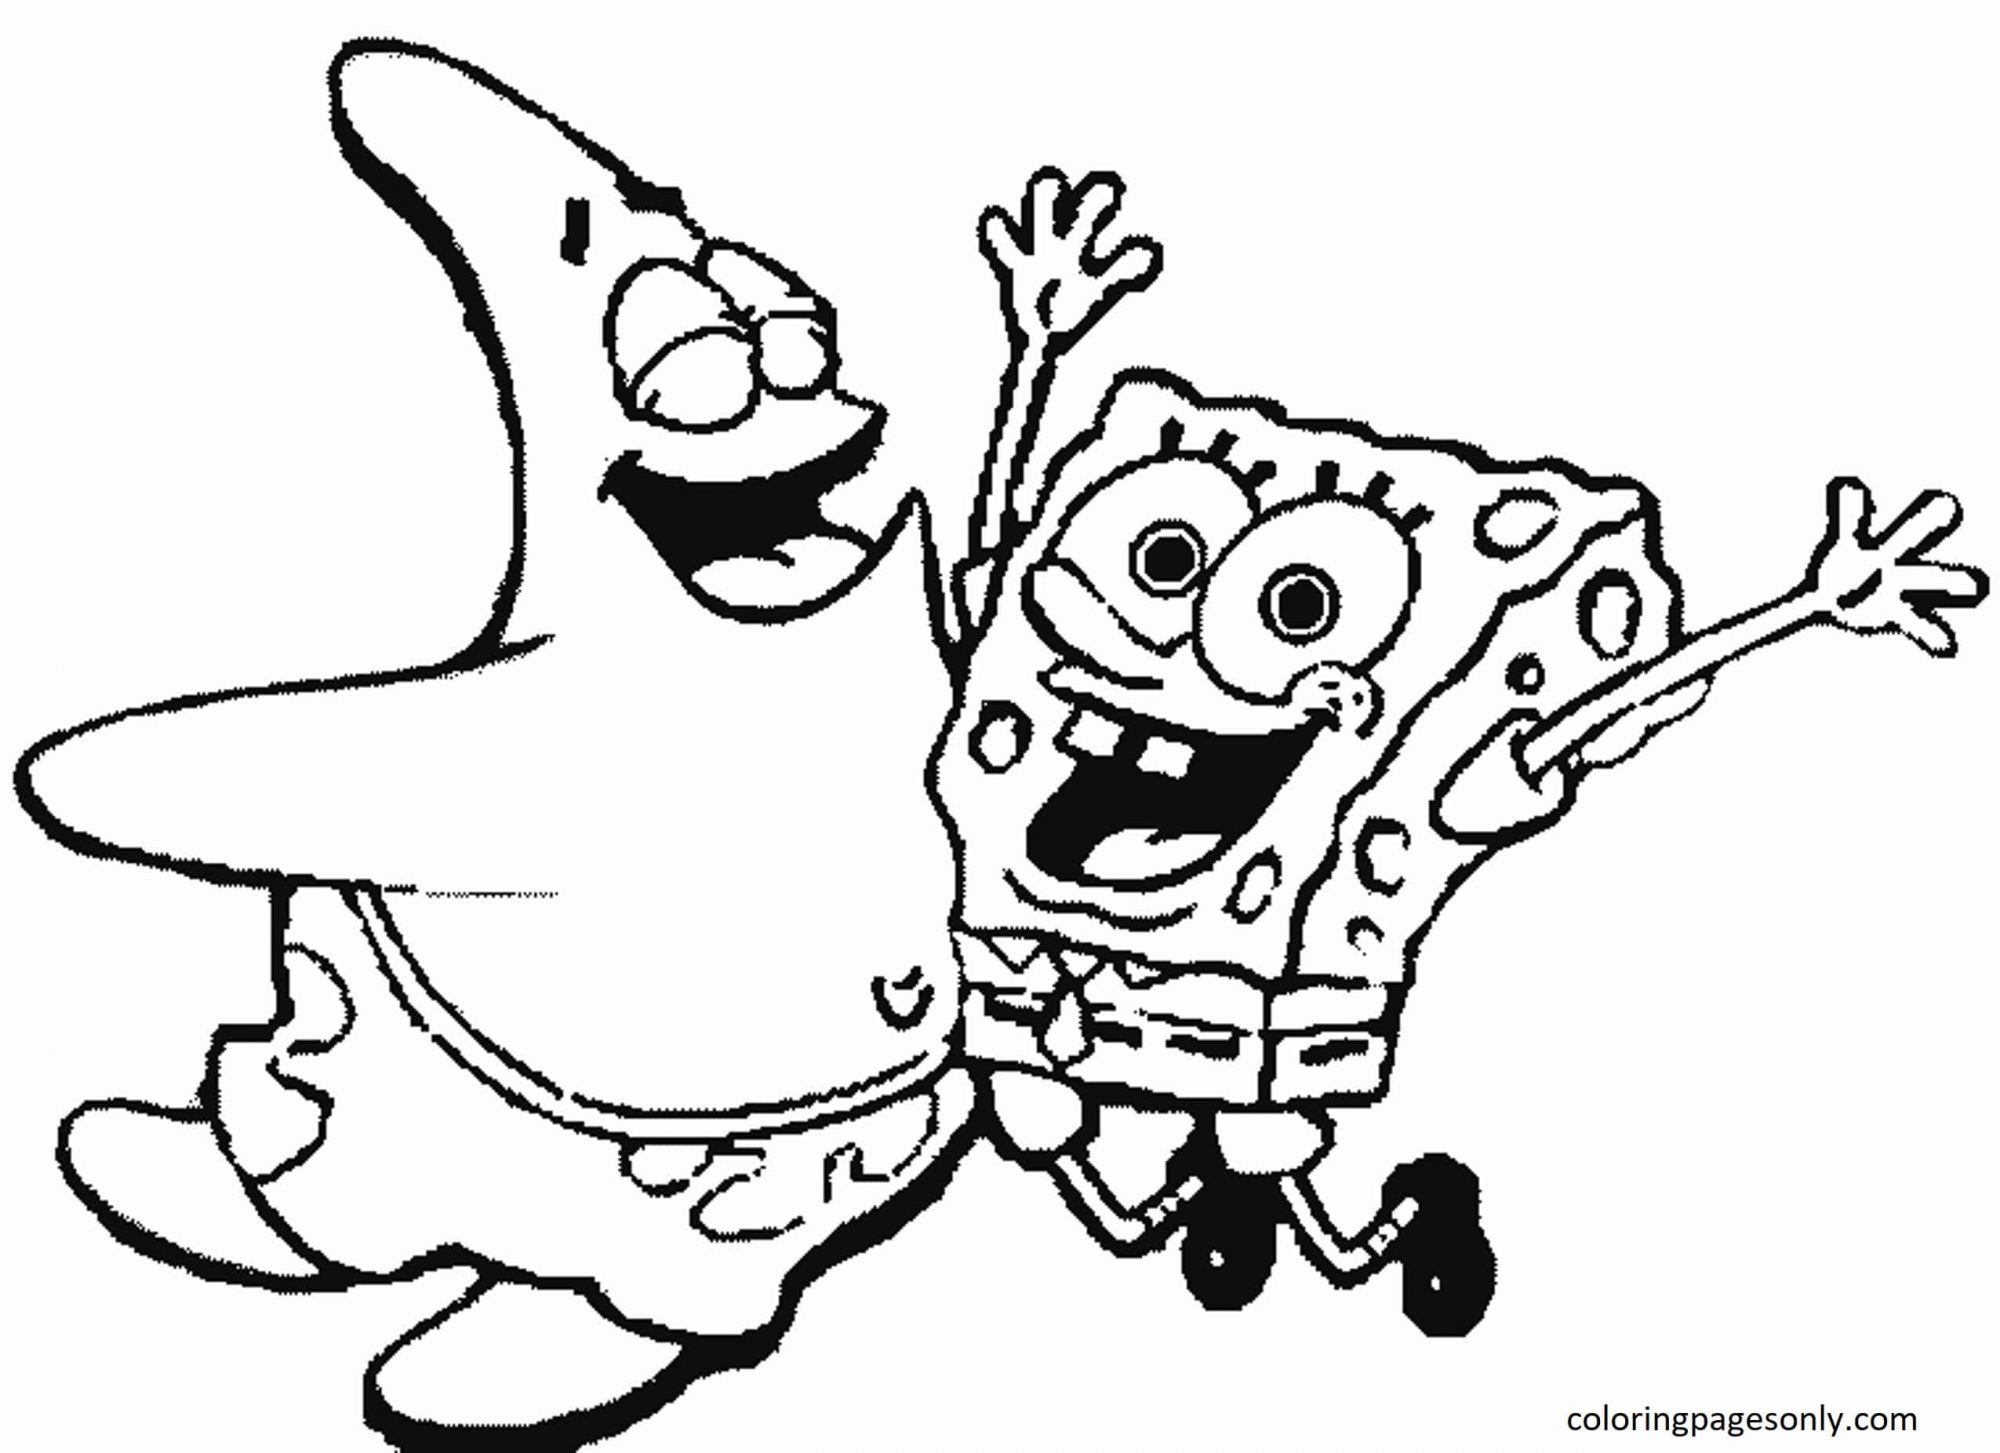 SpongeBob und Patrick 2 Malvorlagen